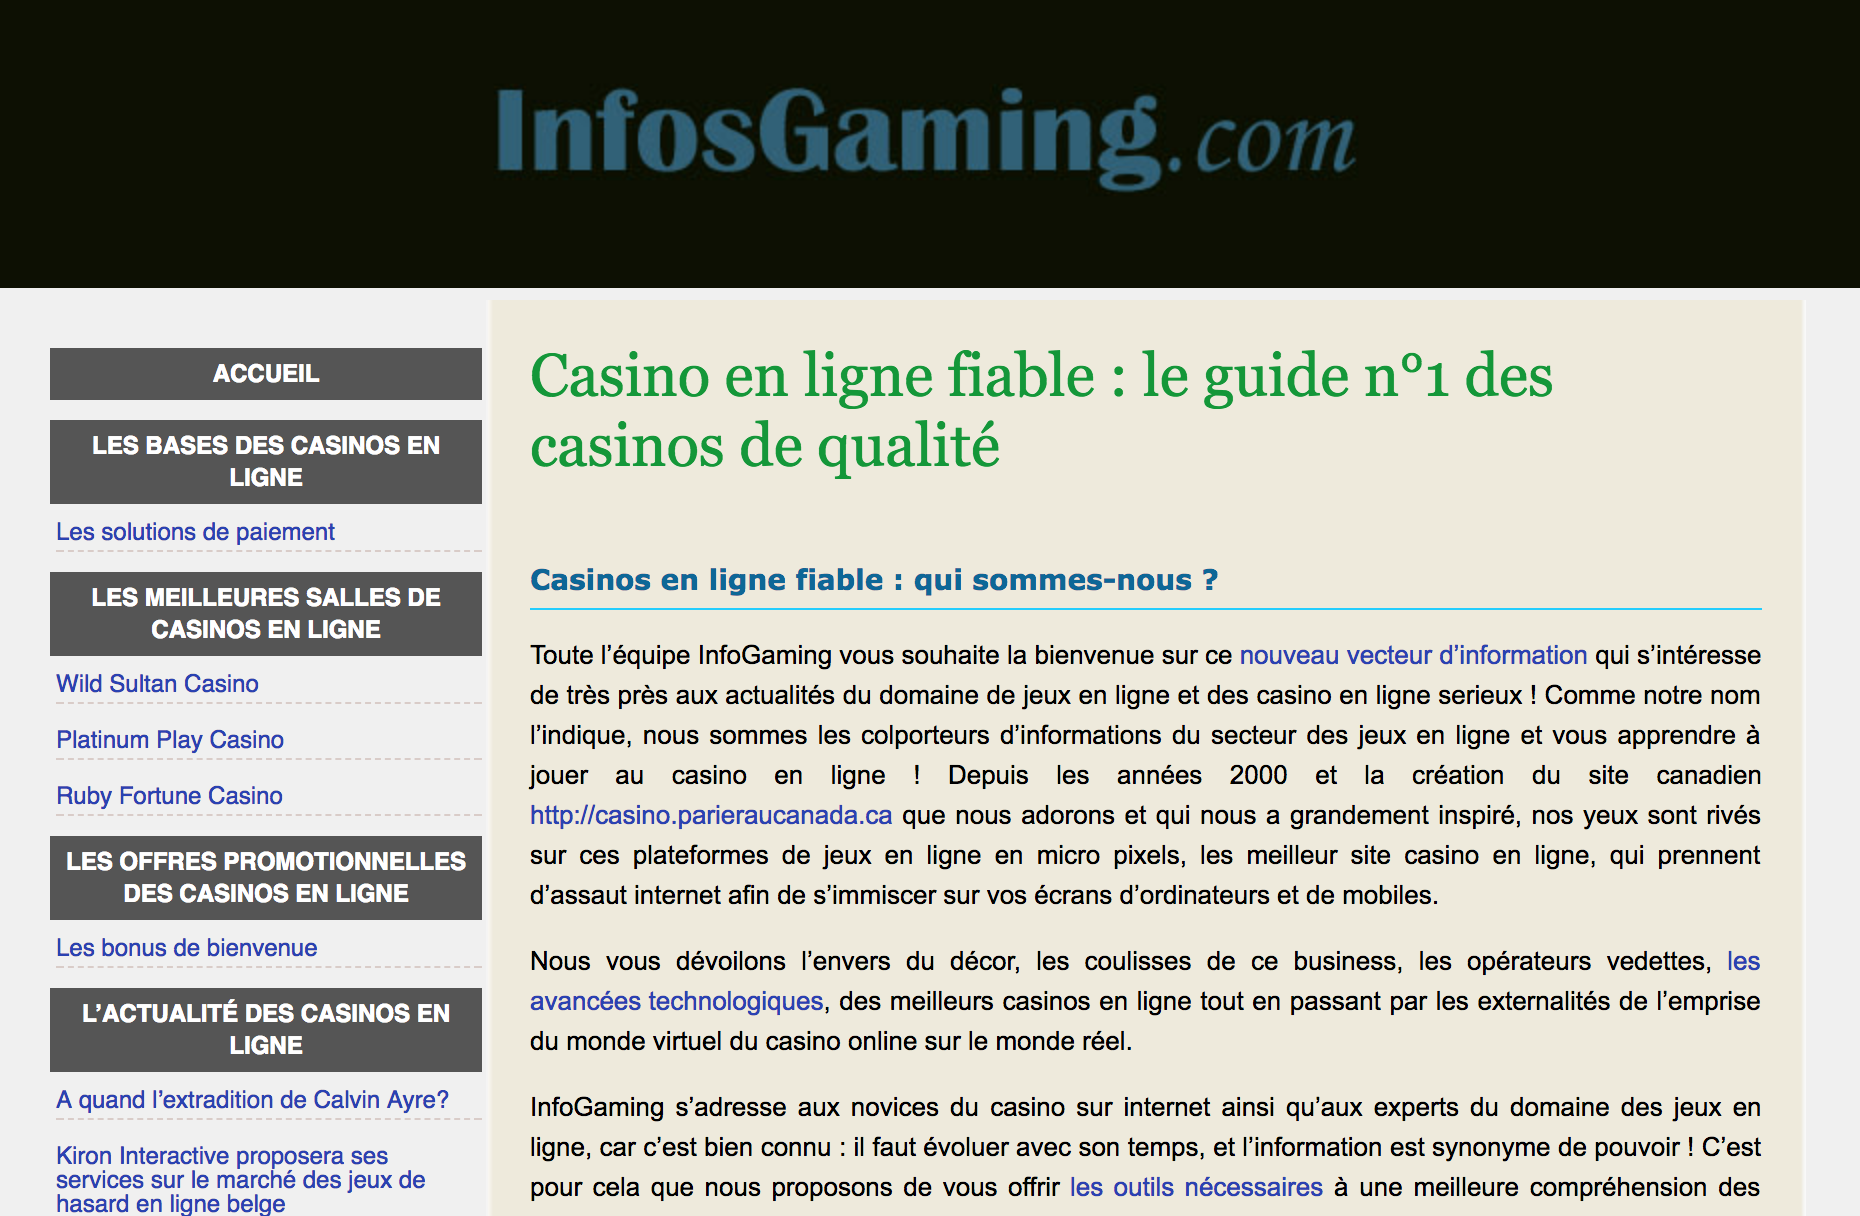 Casino en ligne fiable infosgaming guide